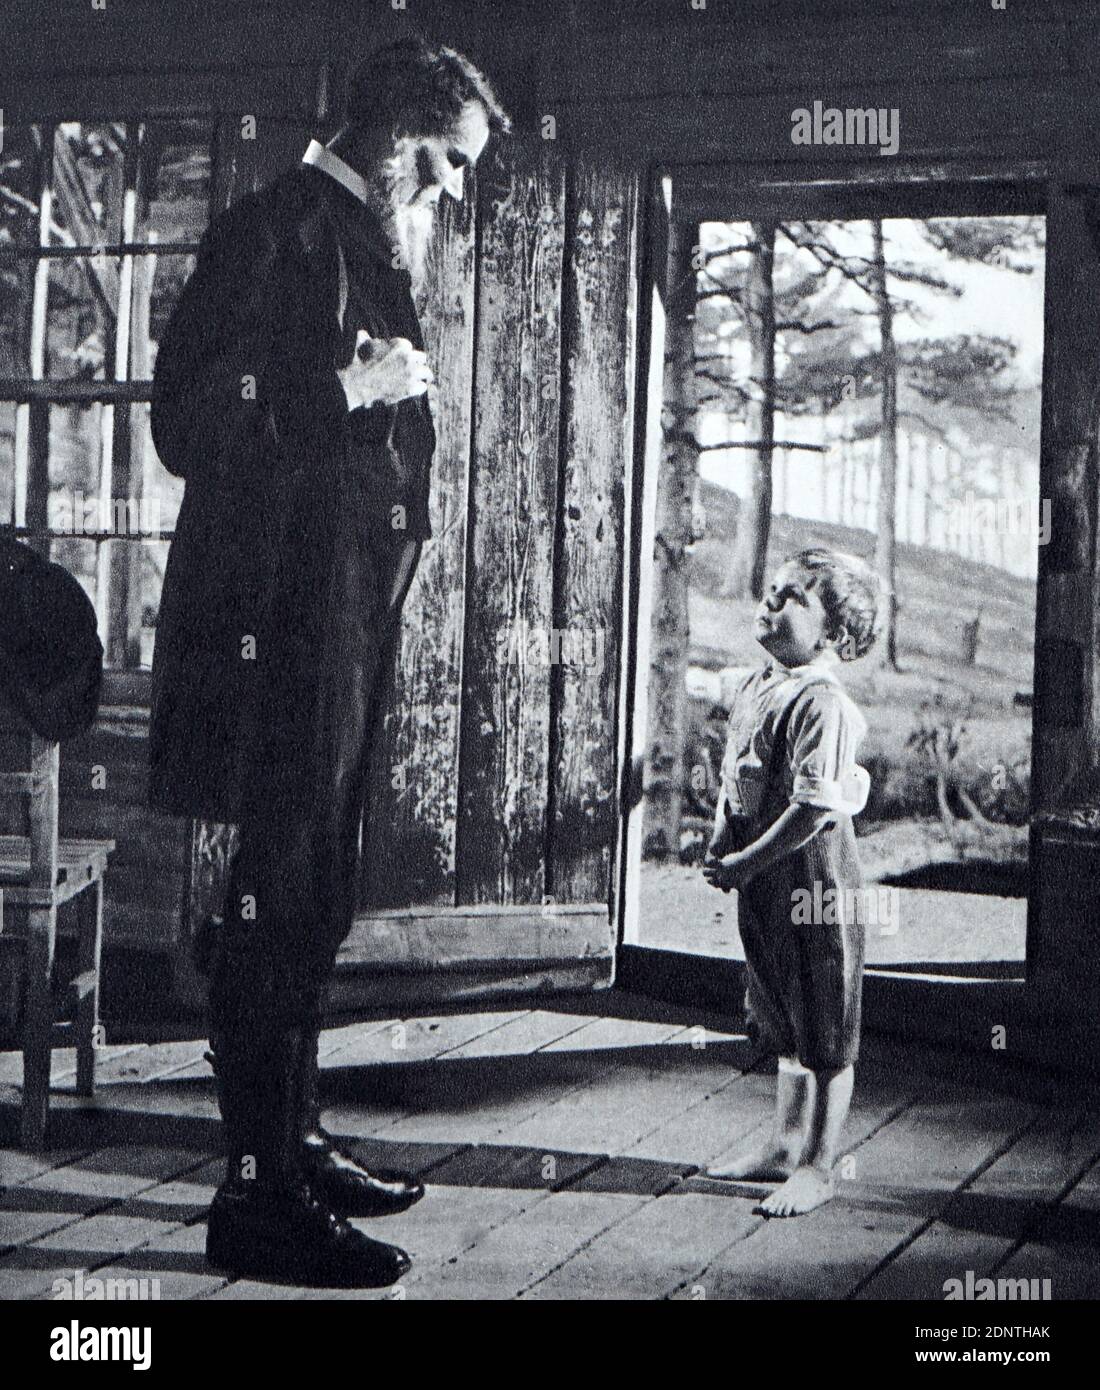 Filmstill von Duncan Macrae (1905-1967) und Vincent Winter (1947-1998) aus "The Kidnappers". Stockfoto